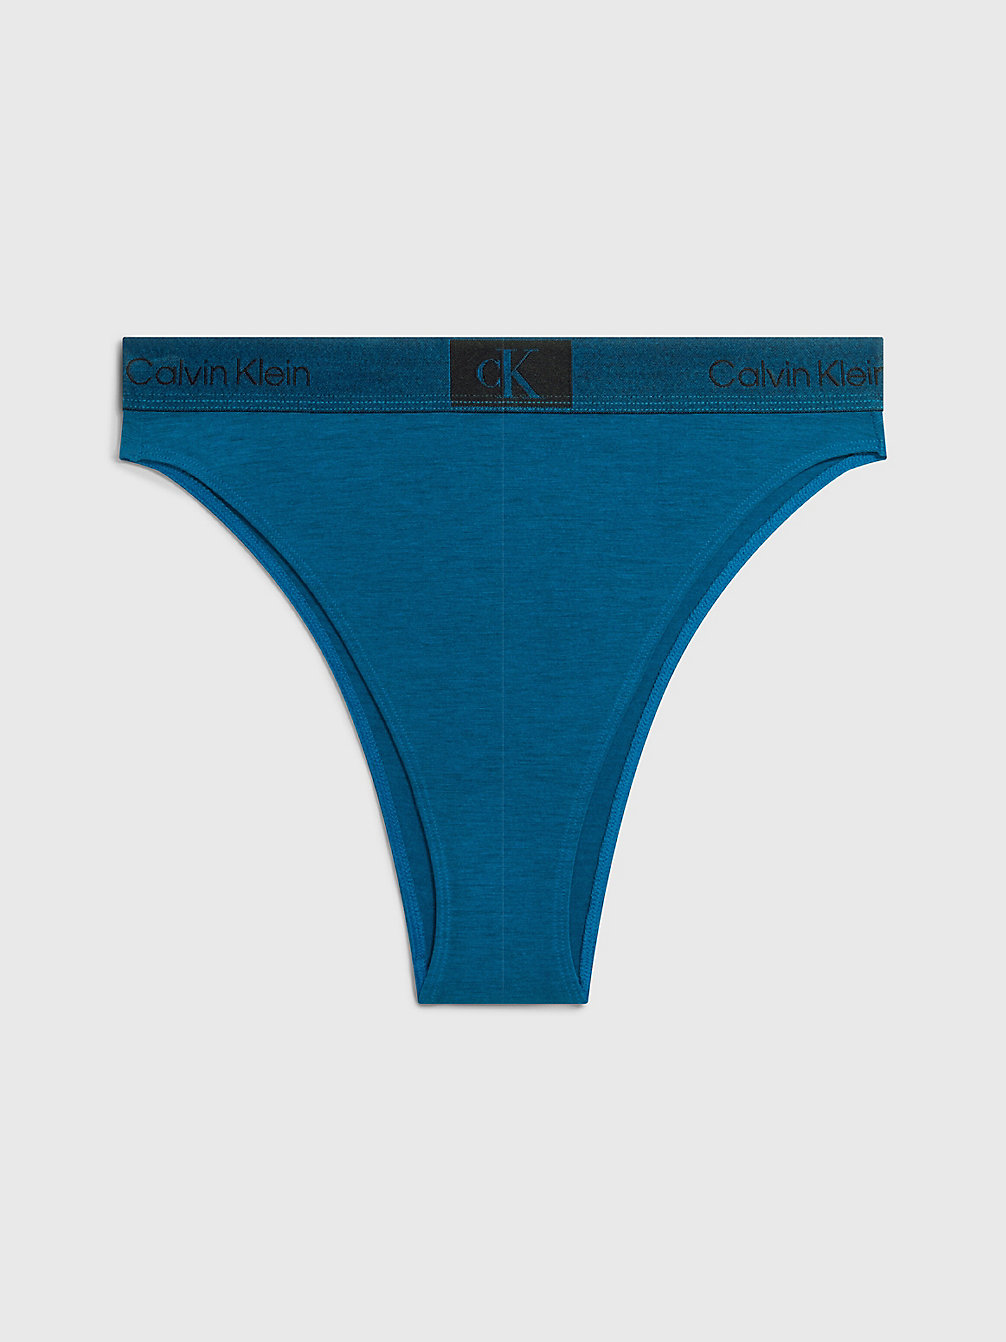 AMPLIFIED BLUE > Brazyliany Z Wysokim Stanem - Ck96 > undefined Kobiety - Calvin Klein